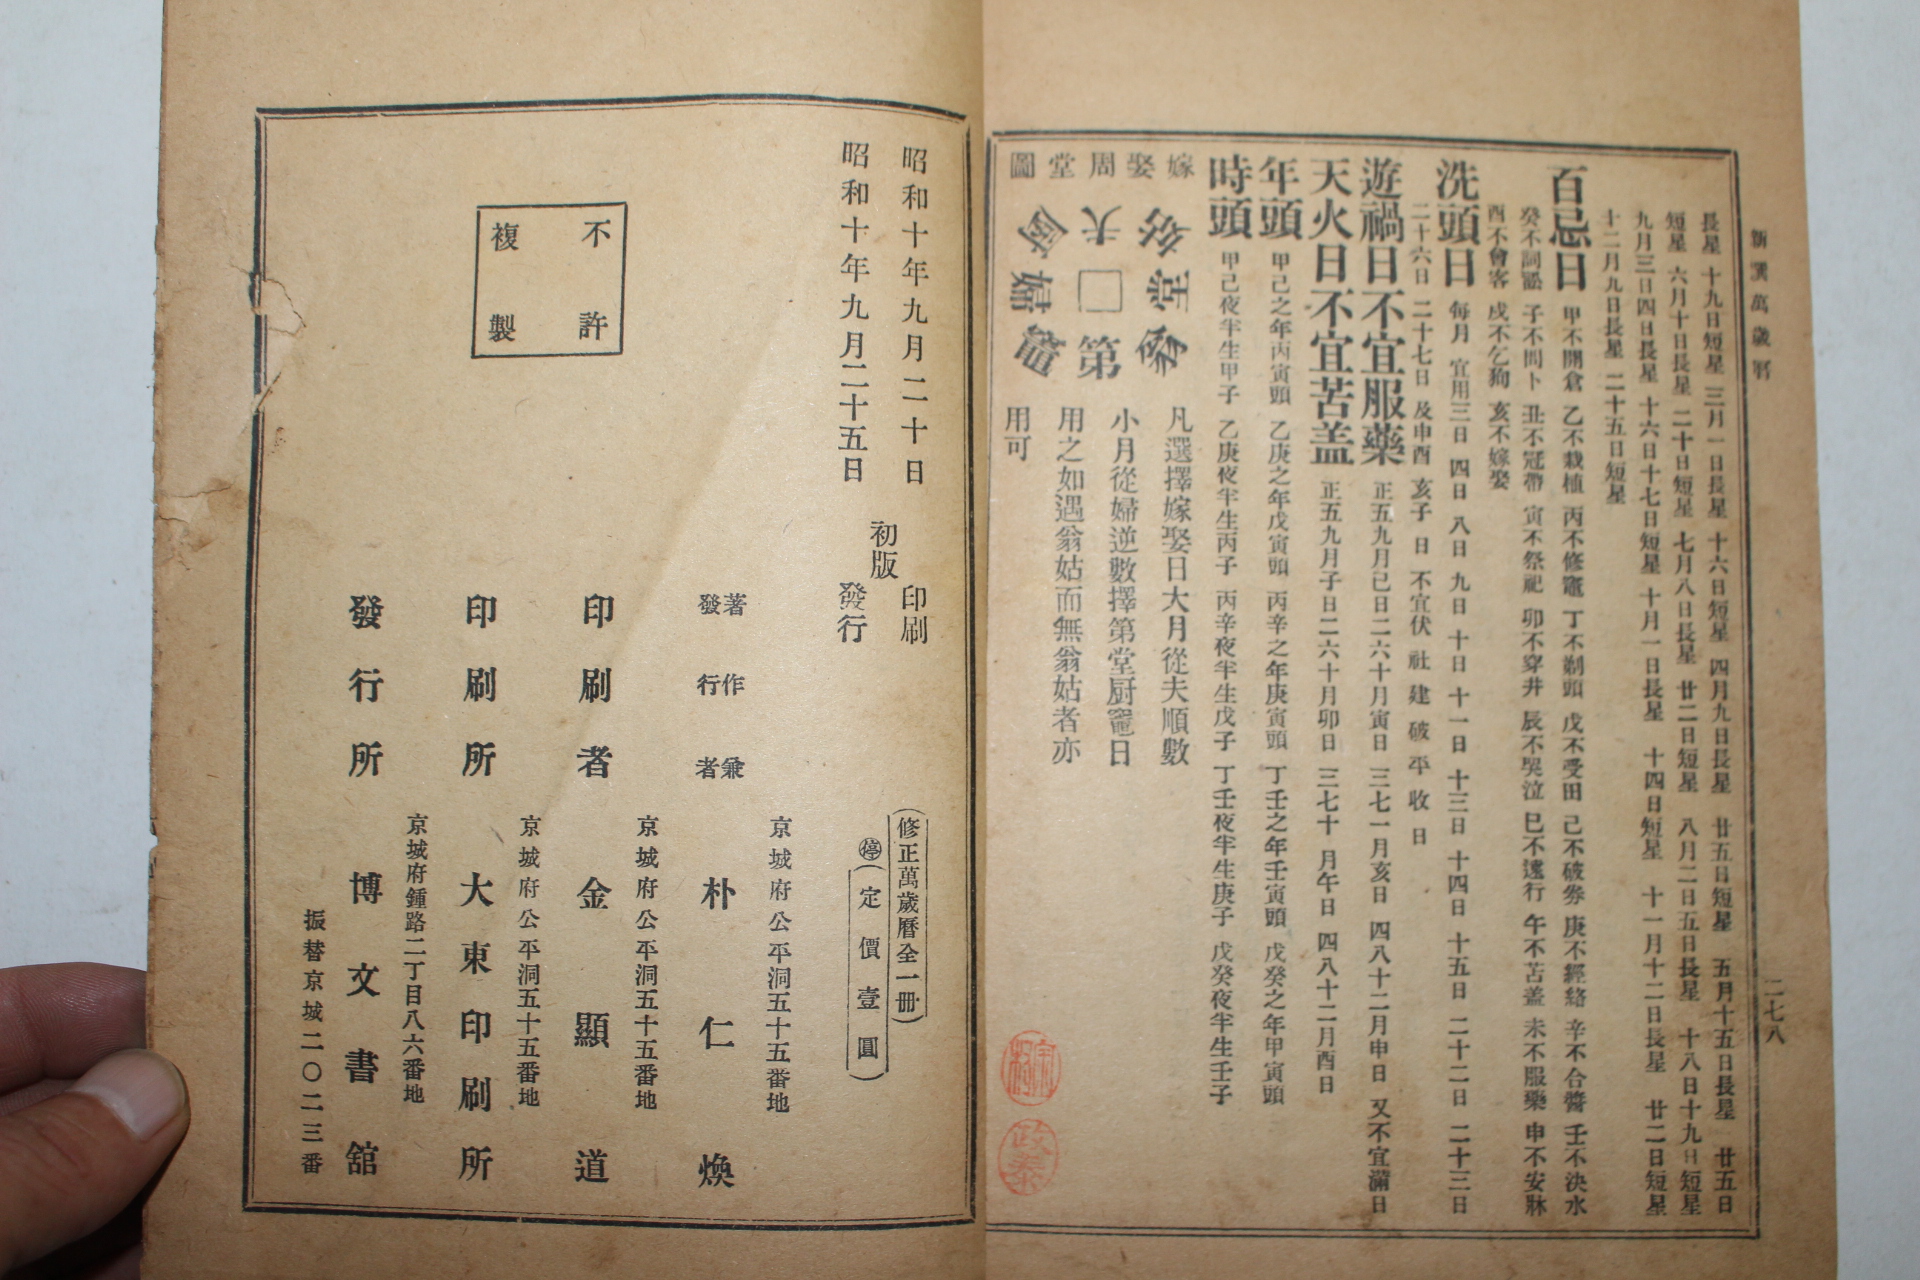 1935년(소화10년) 박인환(朴仁煥) 수정 신선만세력(新選萬歲曆)